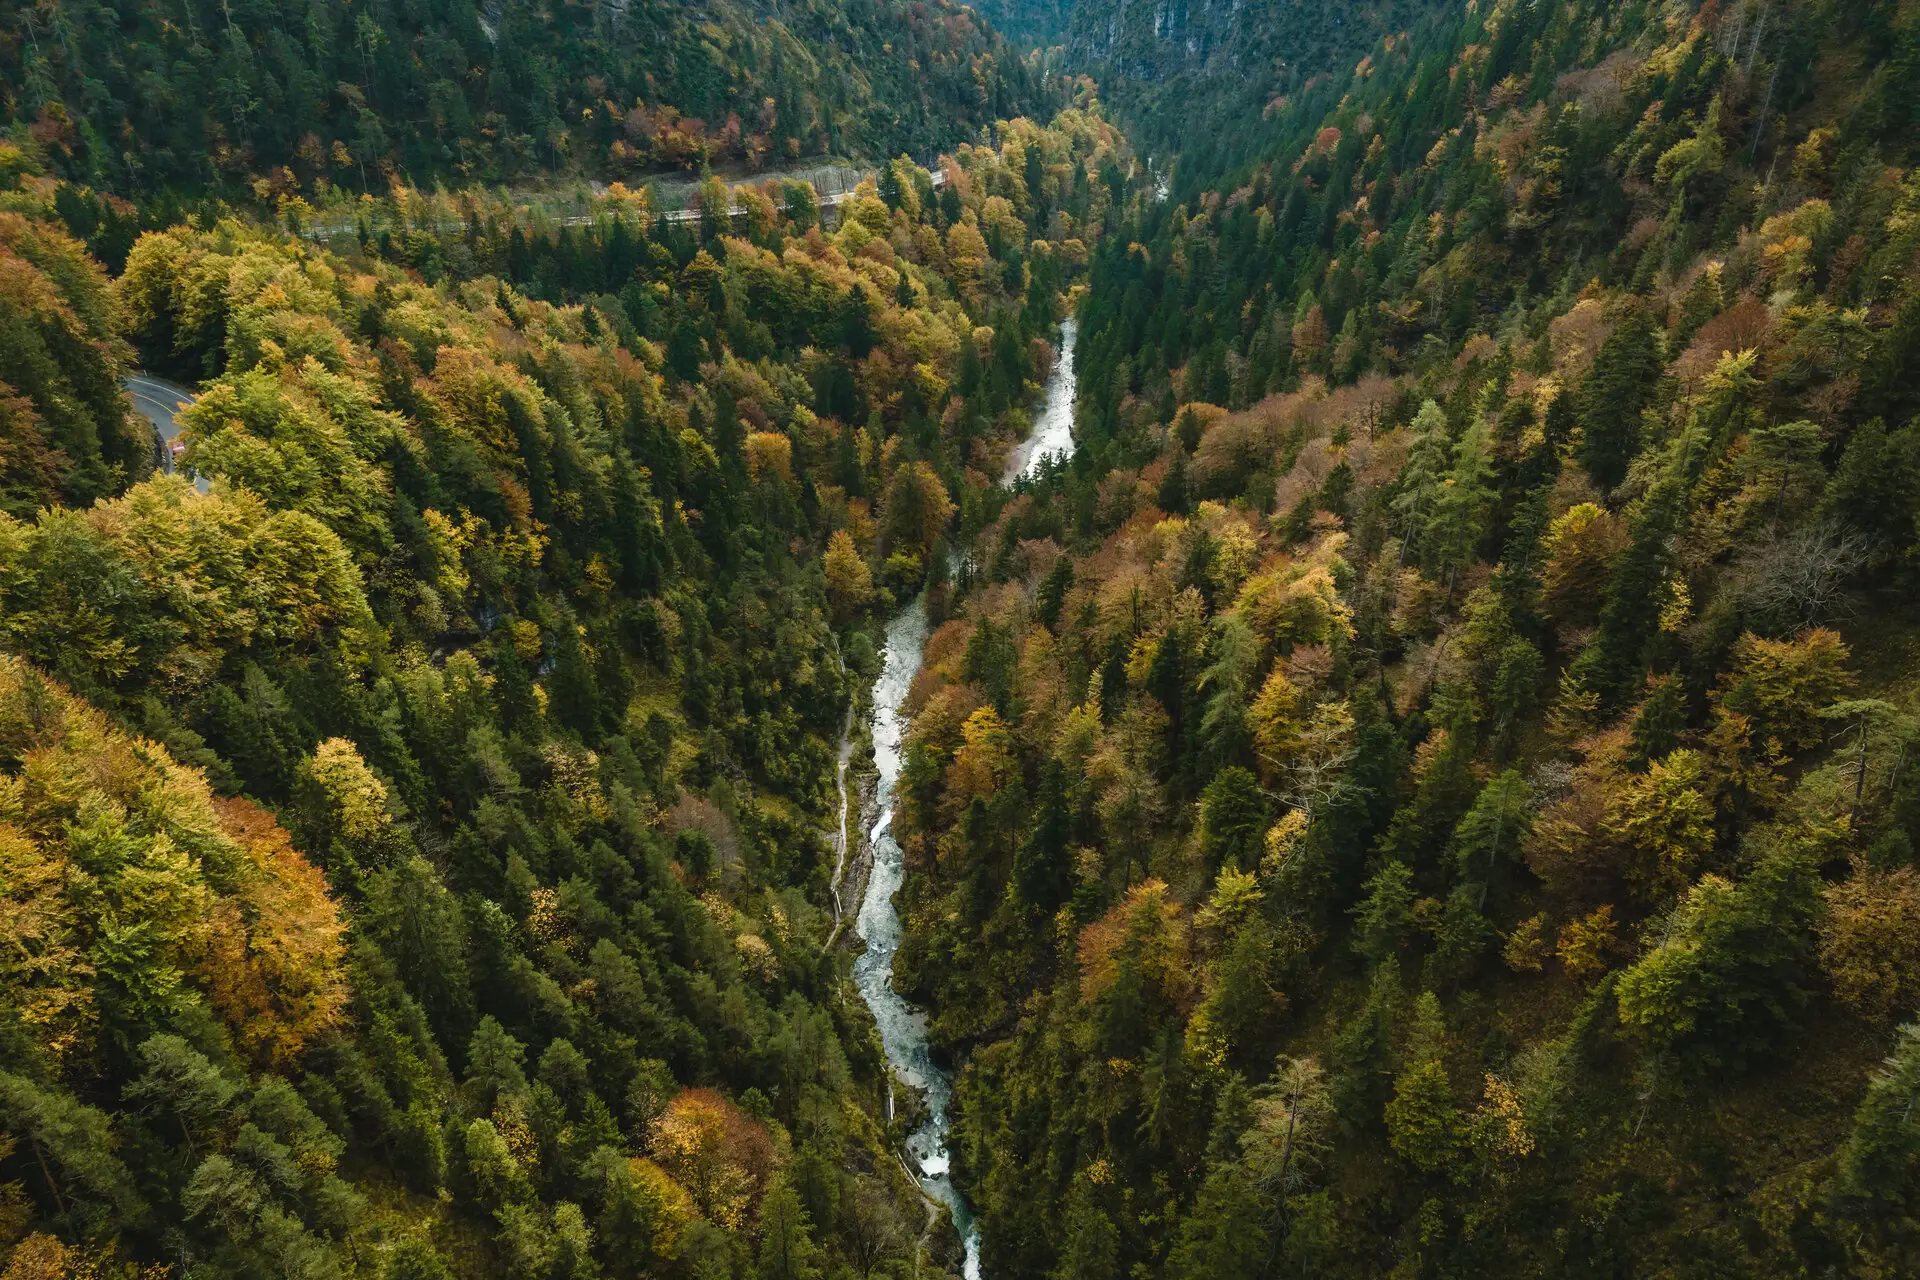 Ein Fluss fließt durch einen dichten Wald, umgeben von herbstlich gefärbten Bäumen und einem kleinen Wasserfall.